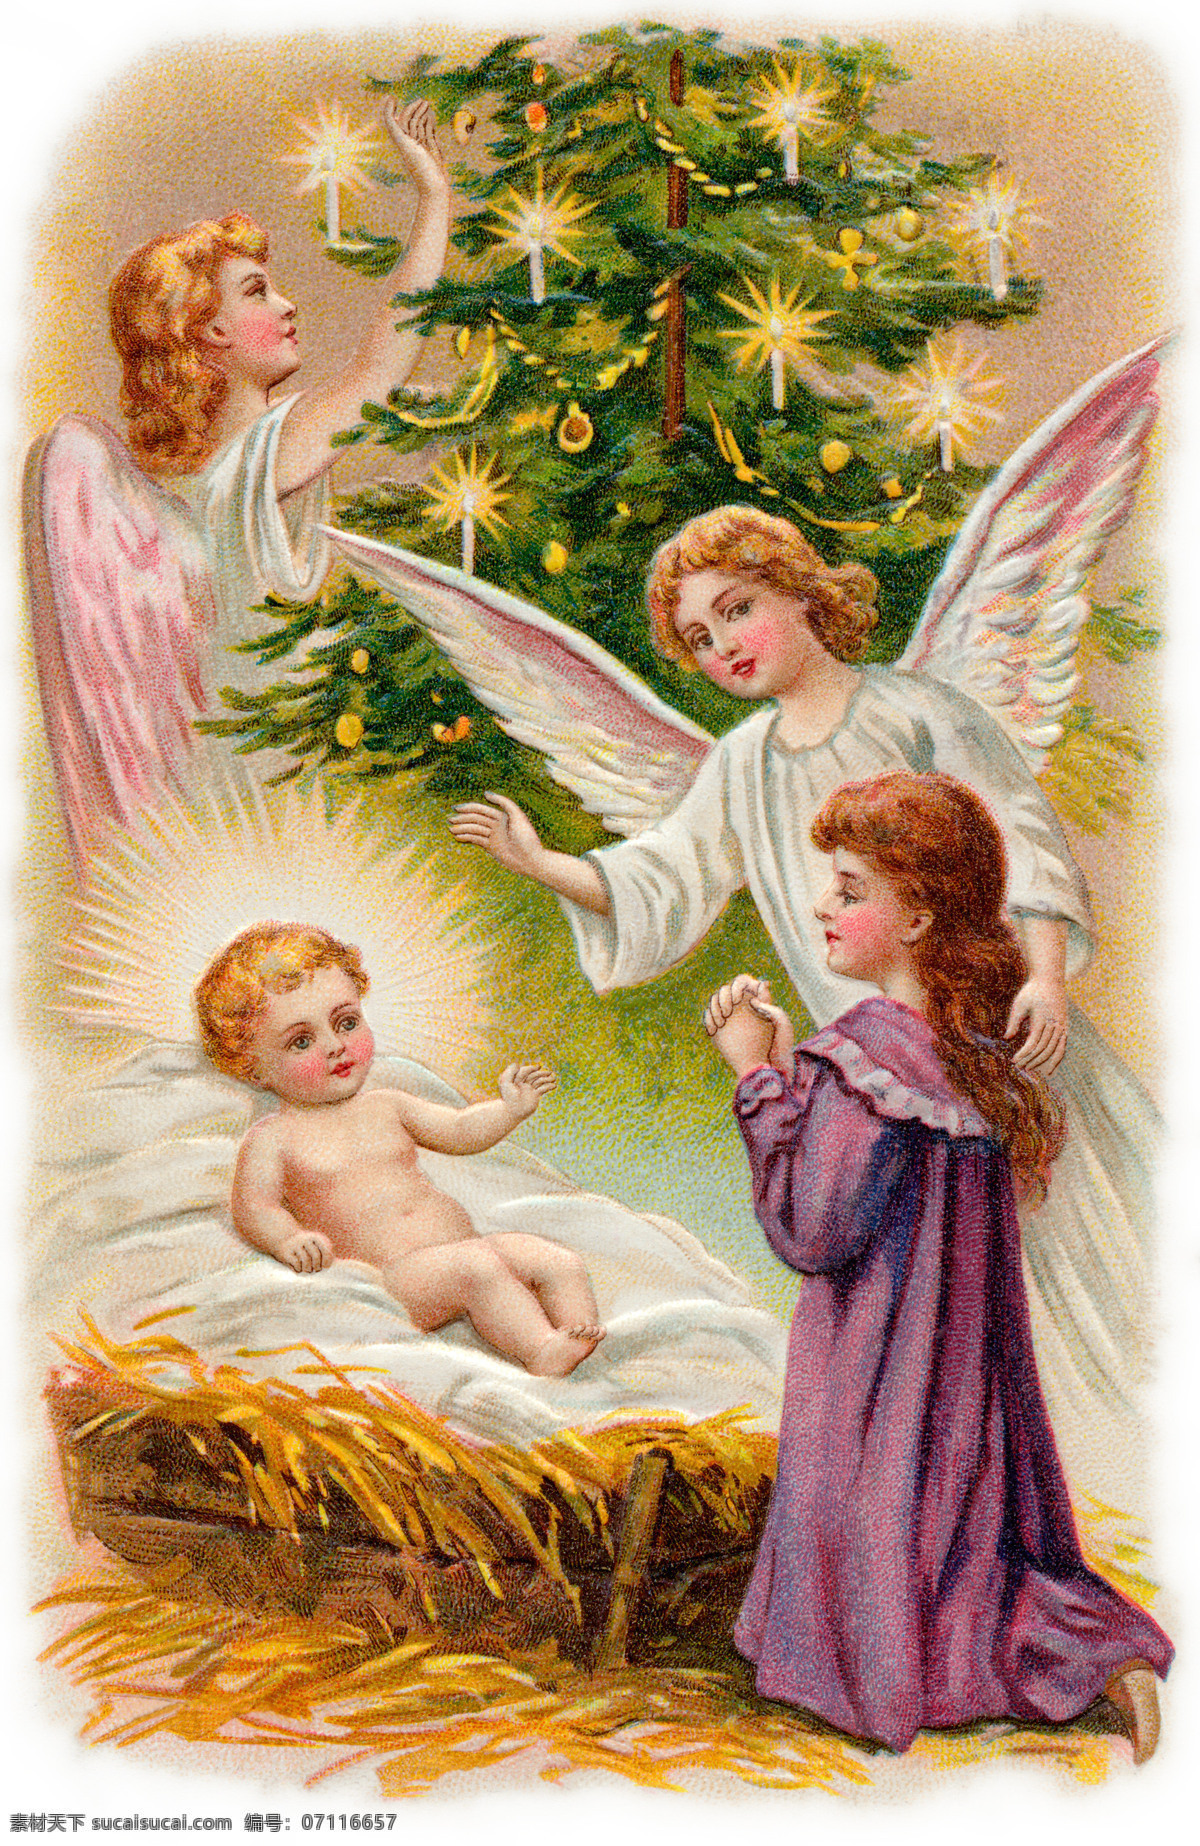 复古 天使 婴儿 插图 复古插图 圣诞节元素 圣诞树 节日庆典 生活百科